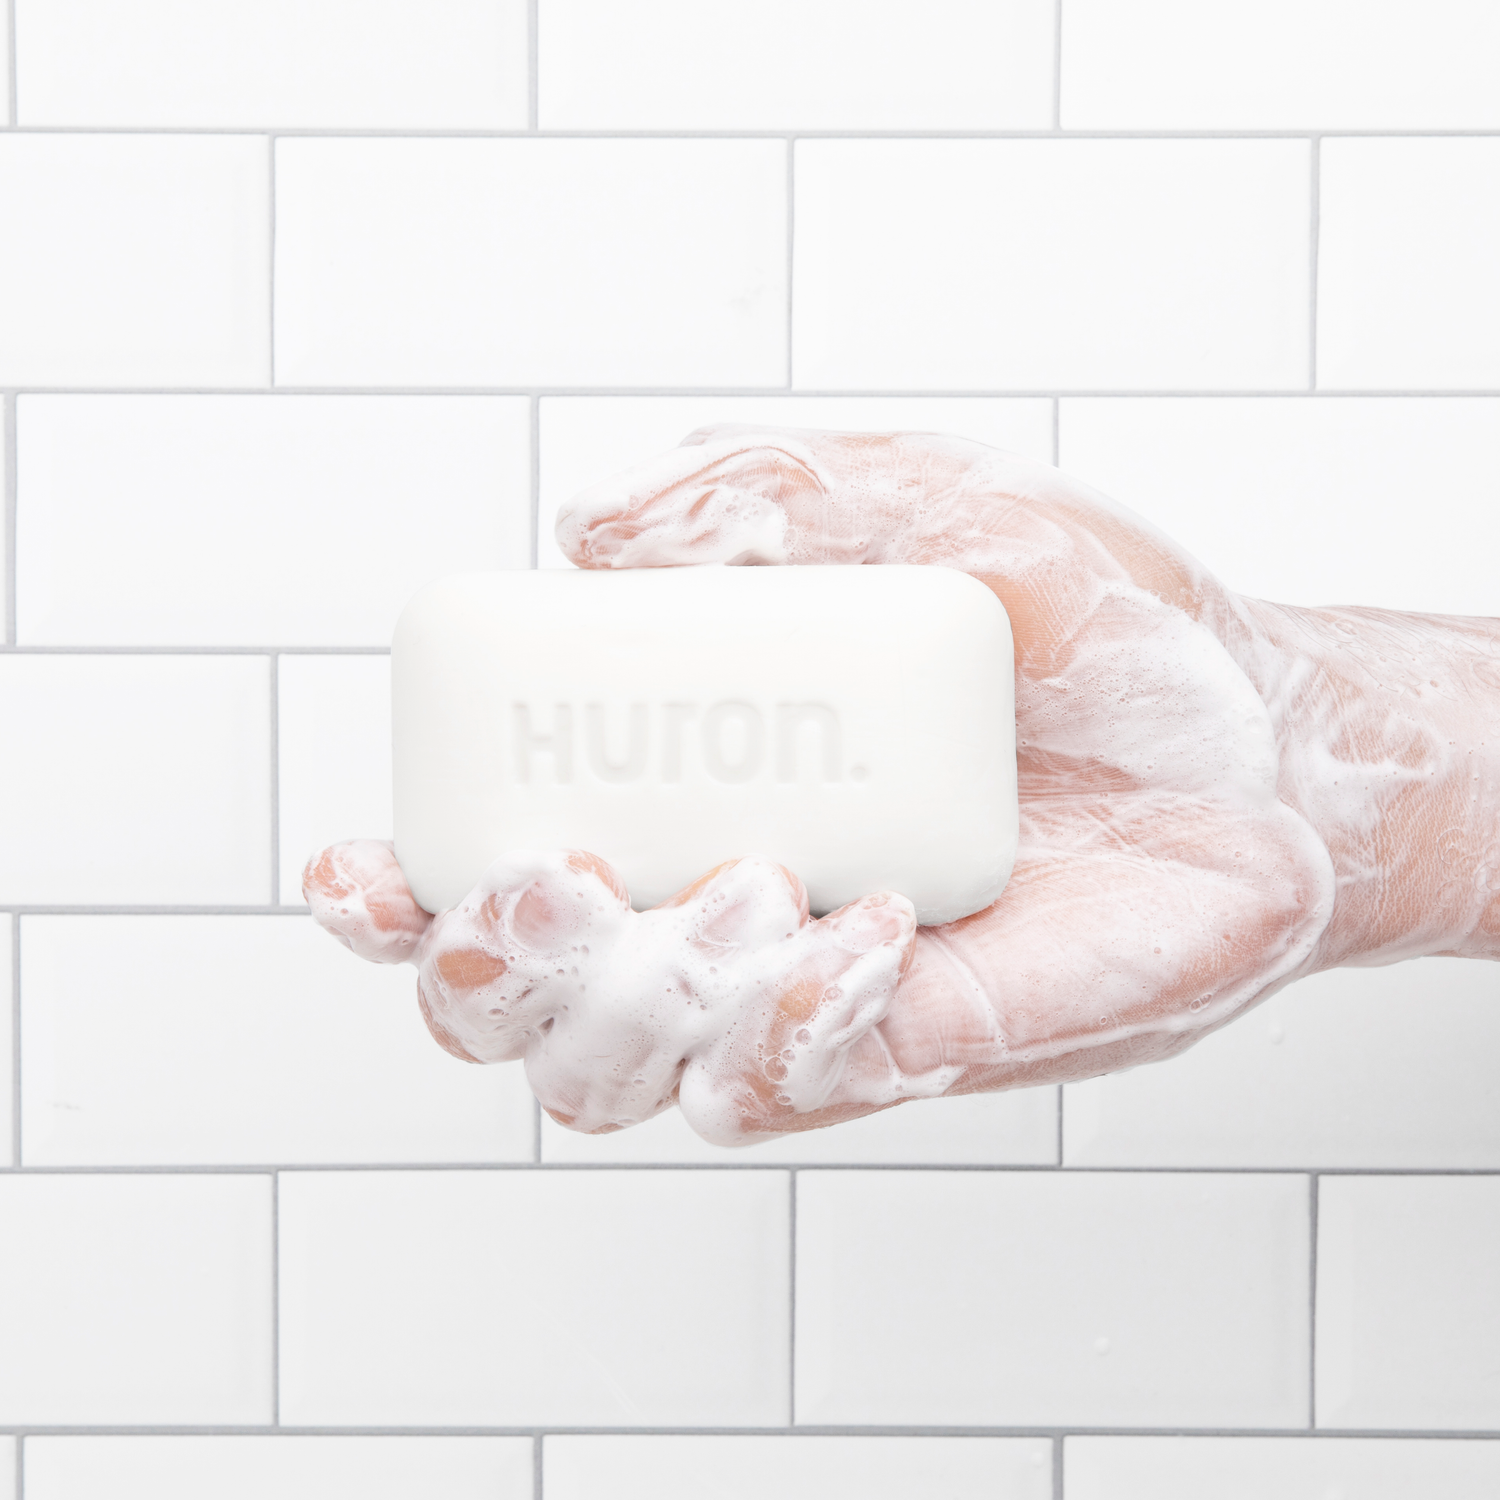 Soap Science: Building a Fan-Favorite Bar Soap